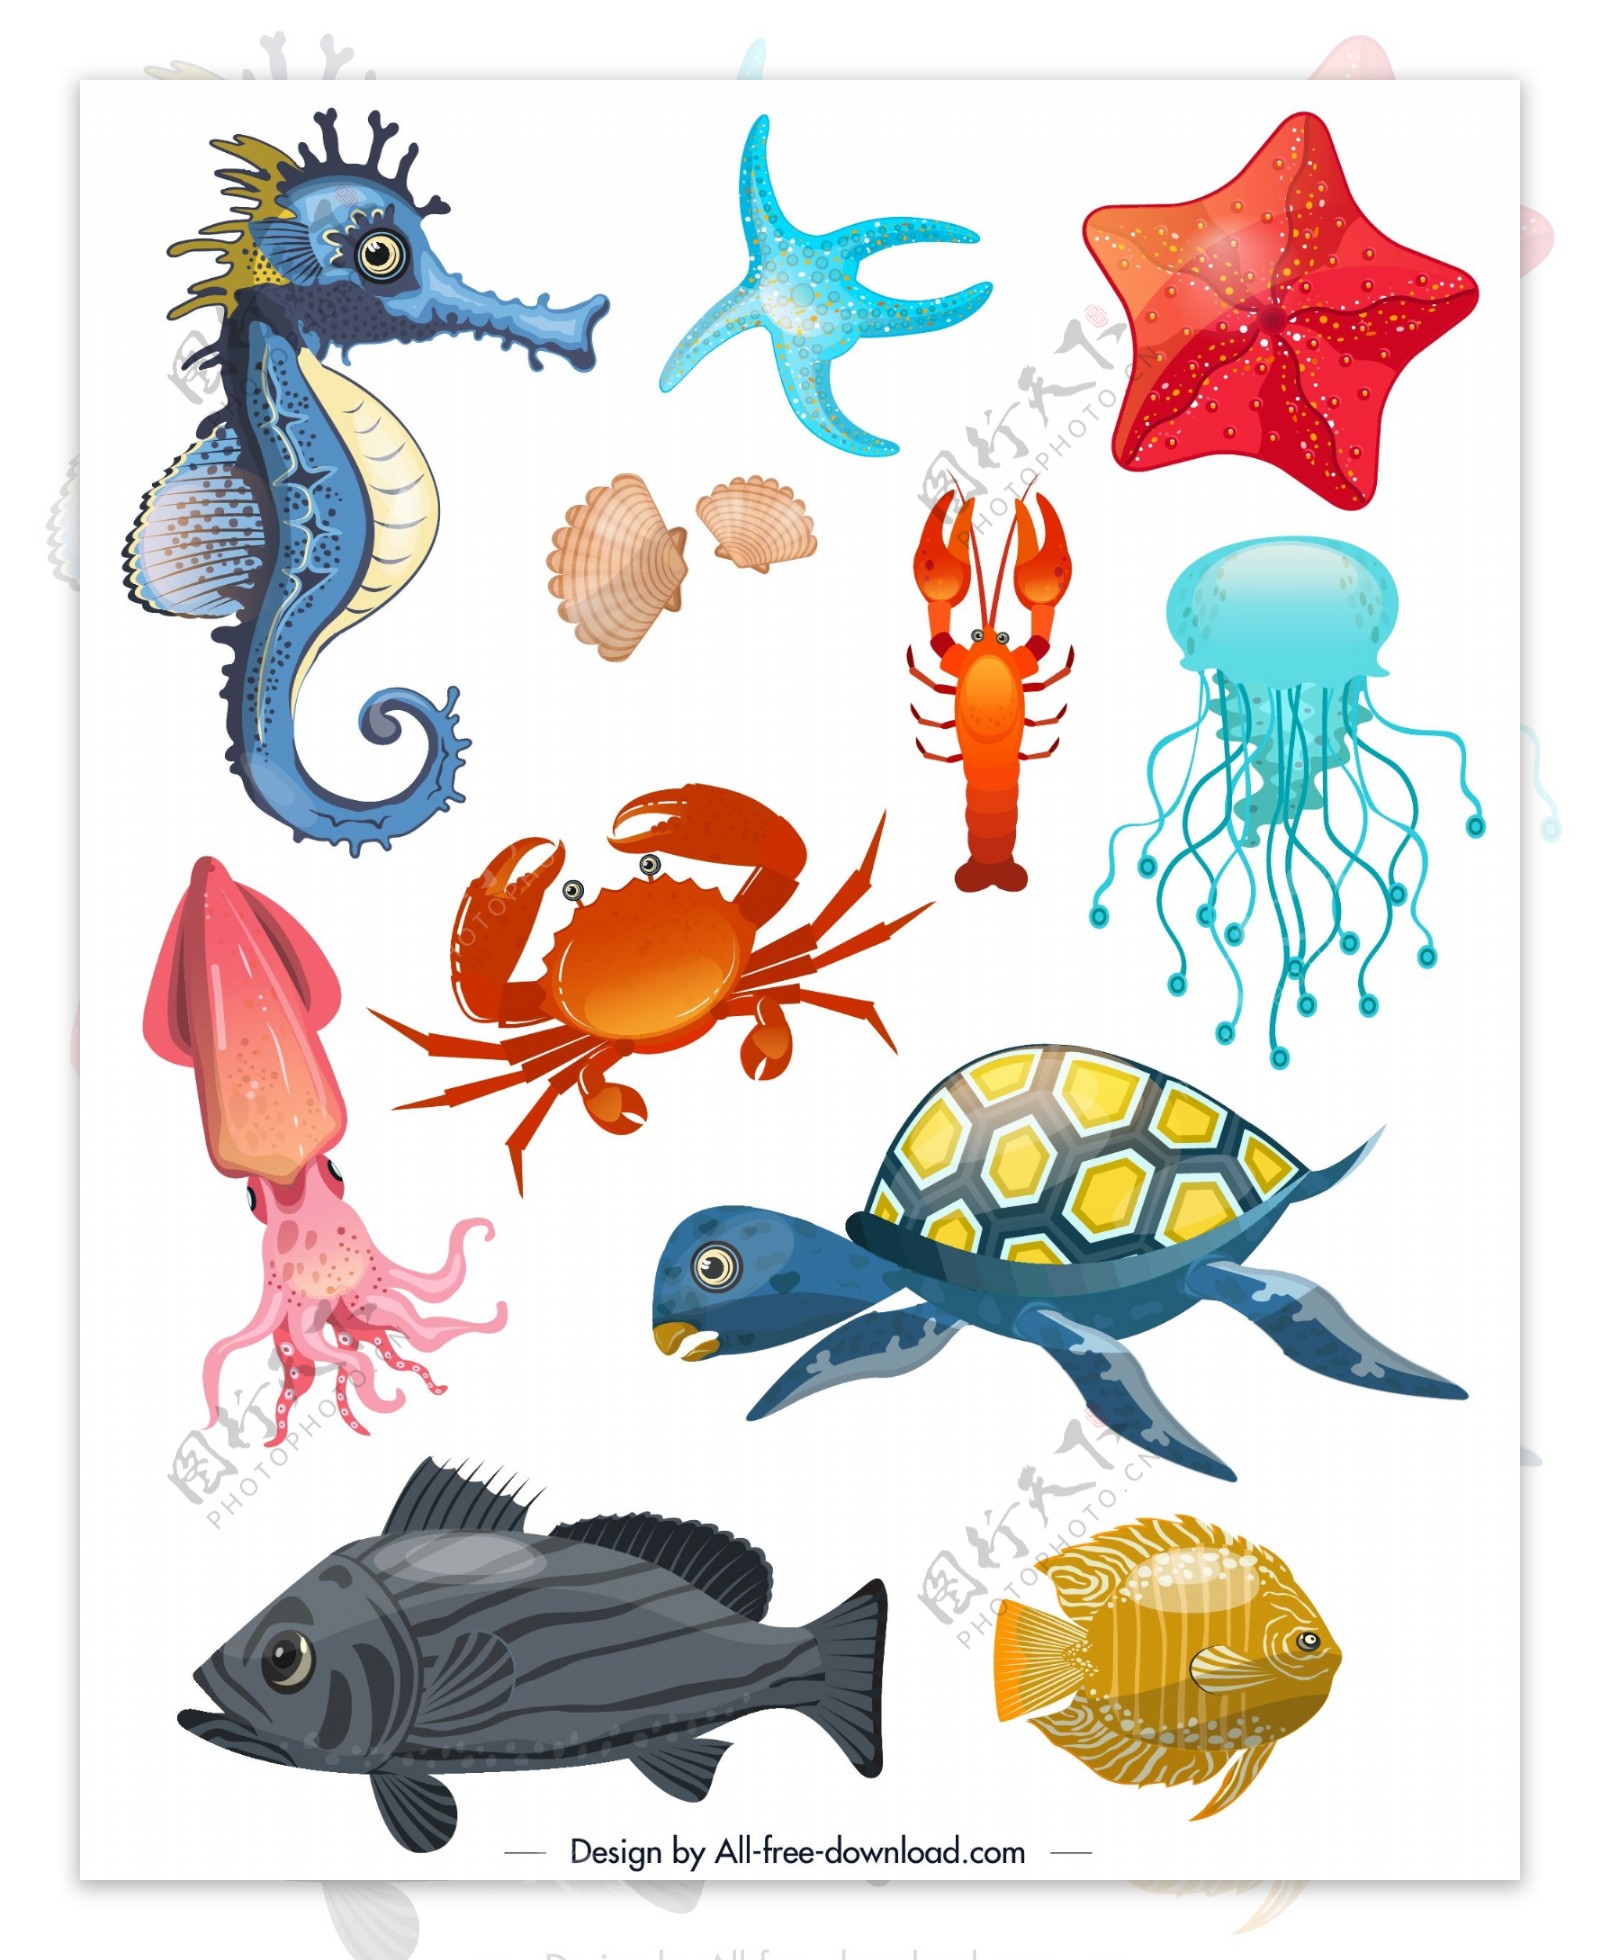 11款创意海洋动物设计矢量素材